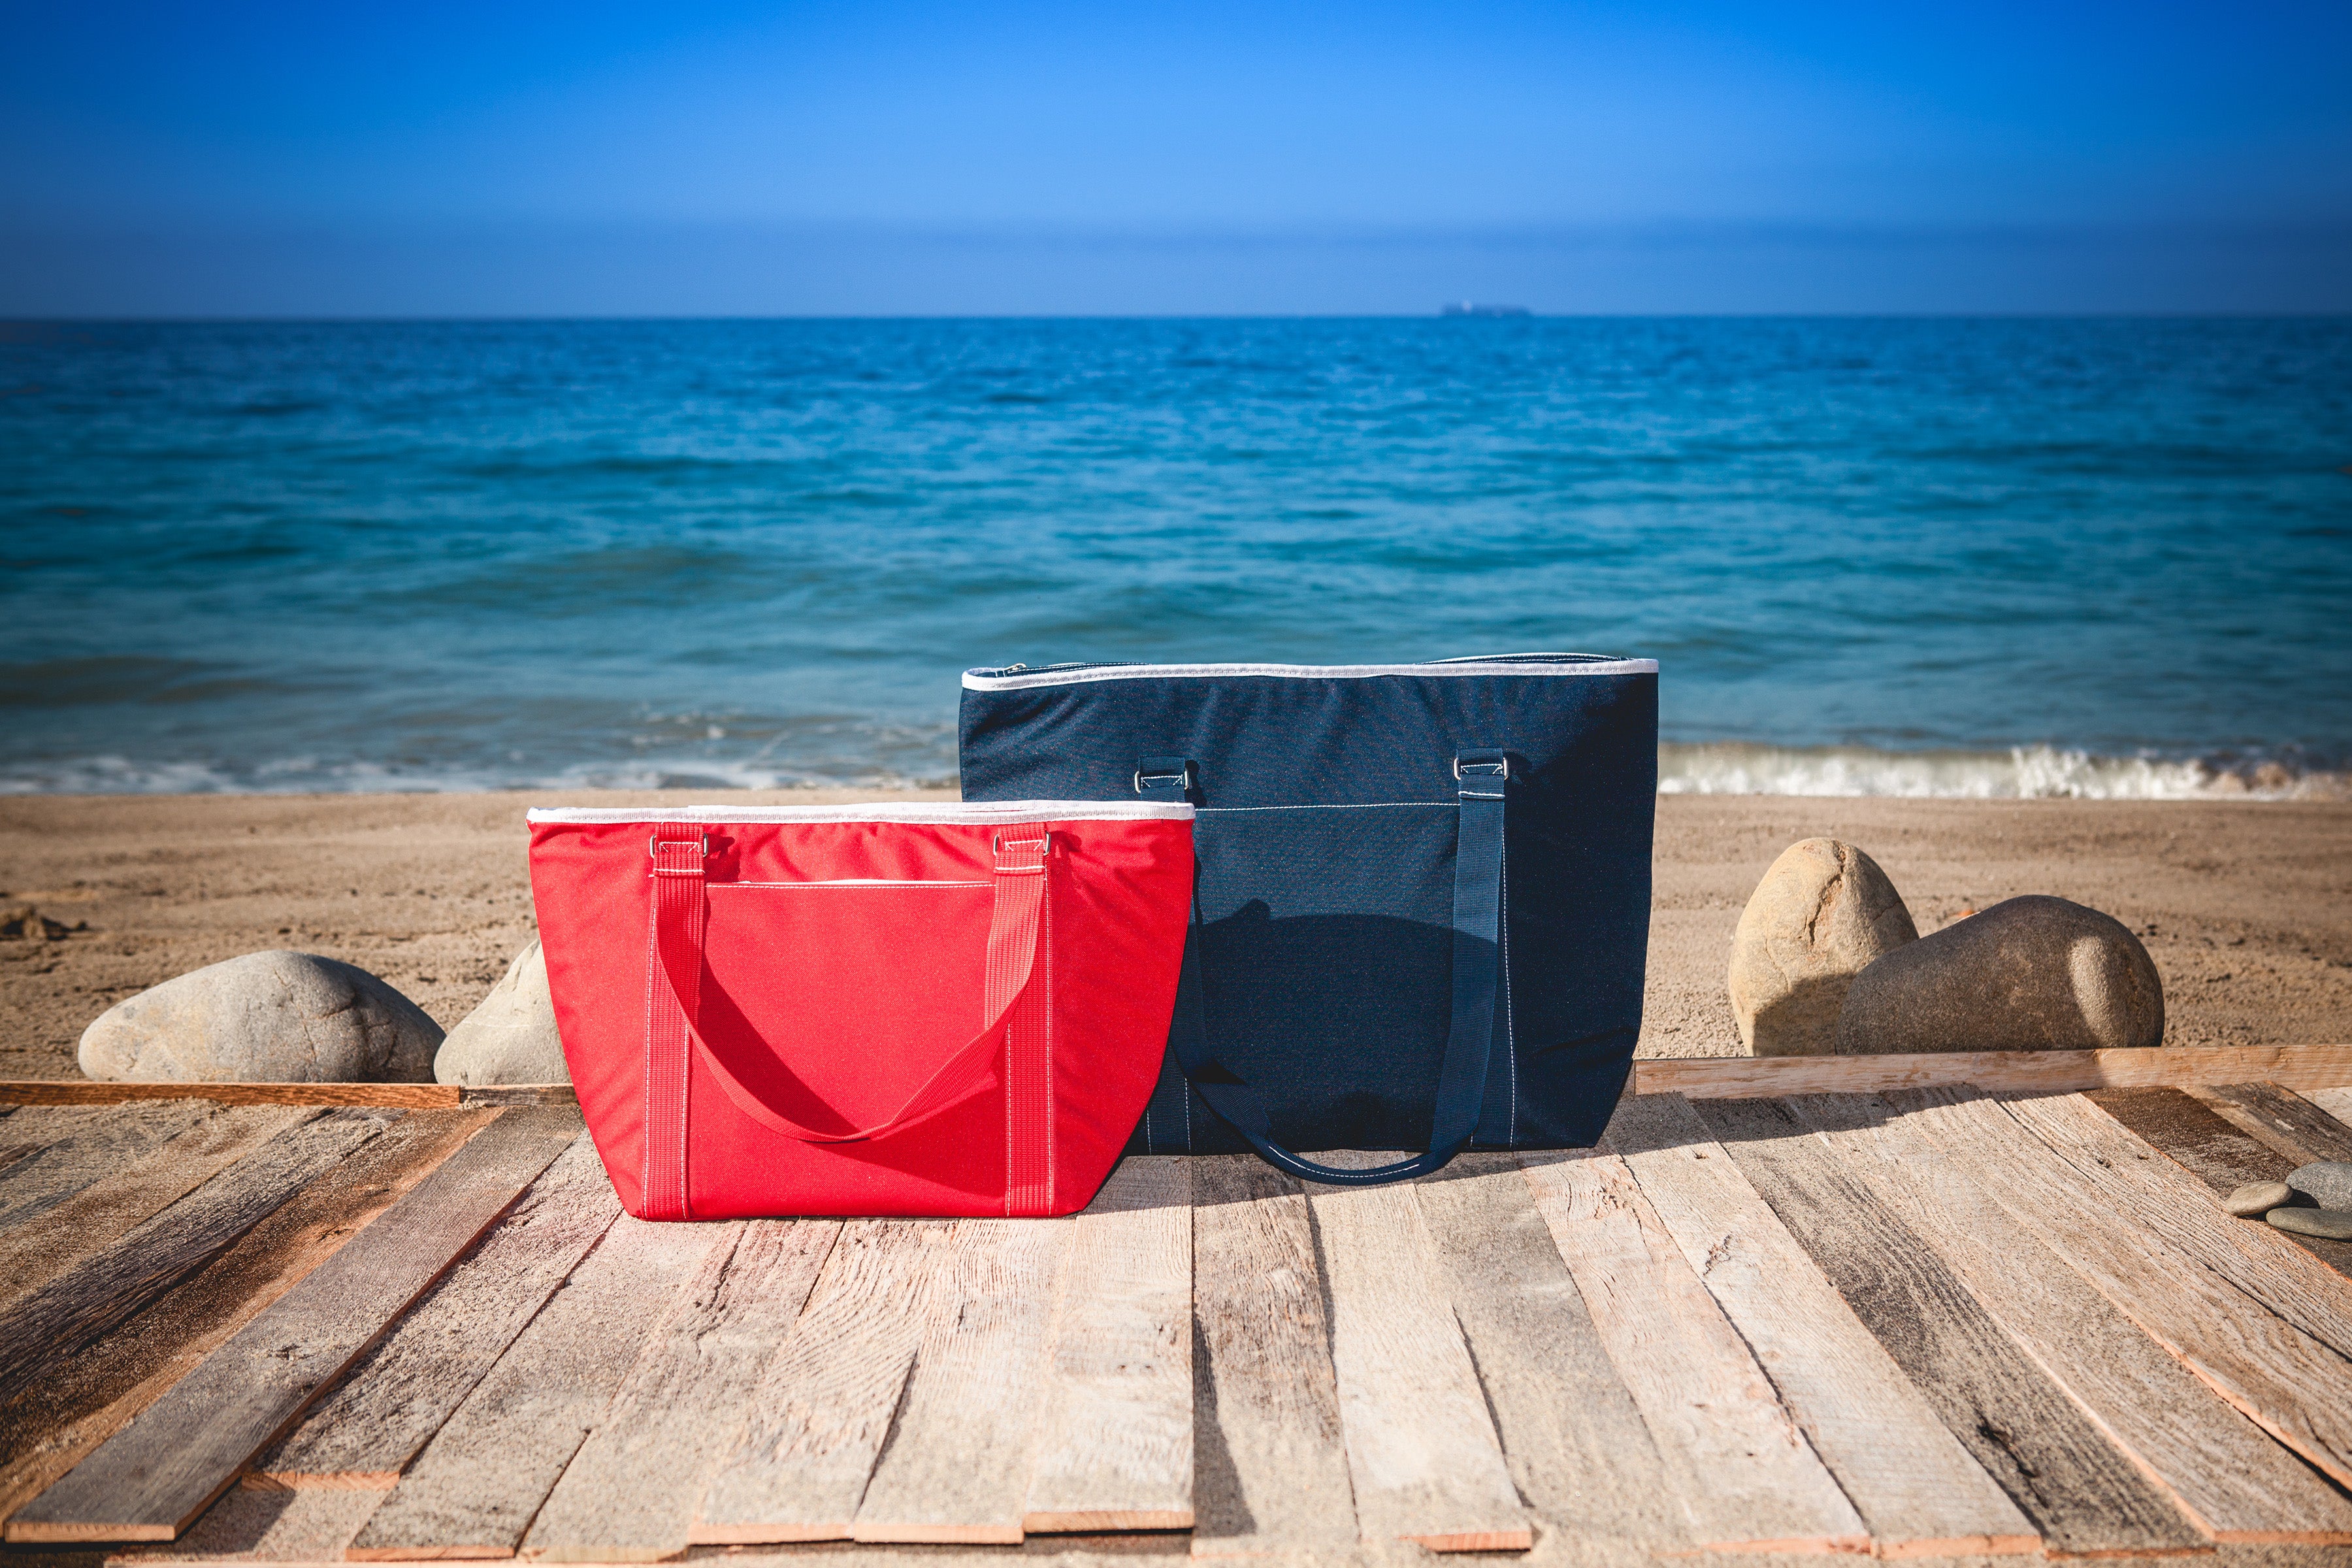 Ole Miss Rebels - Tahoe XL Cooler Tote Bag